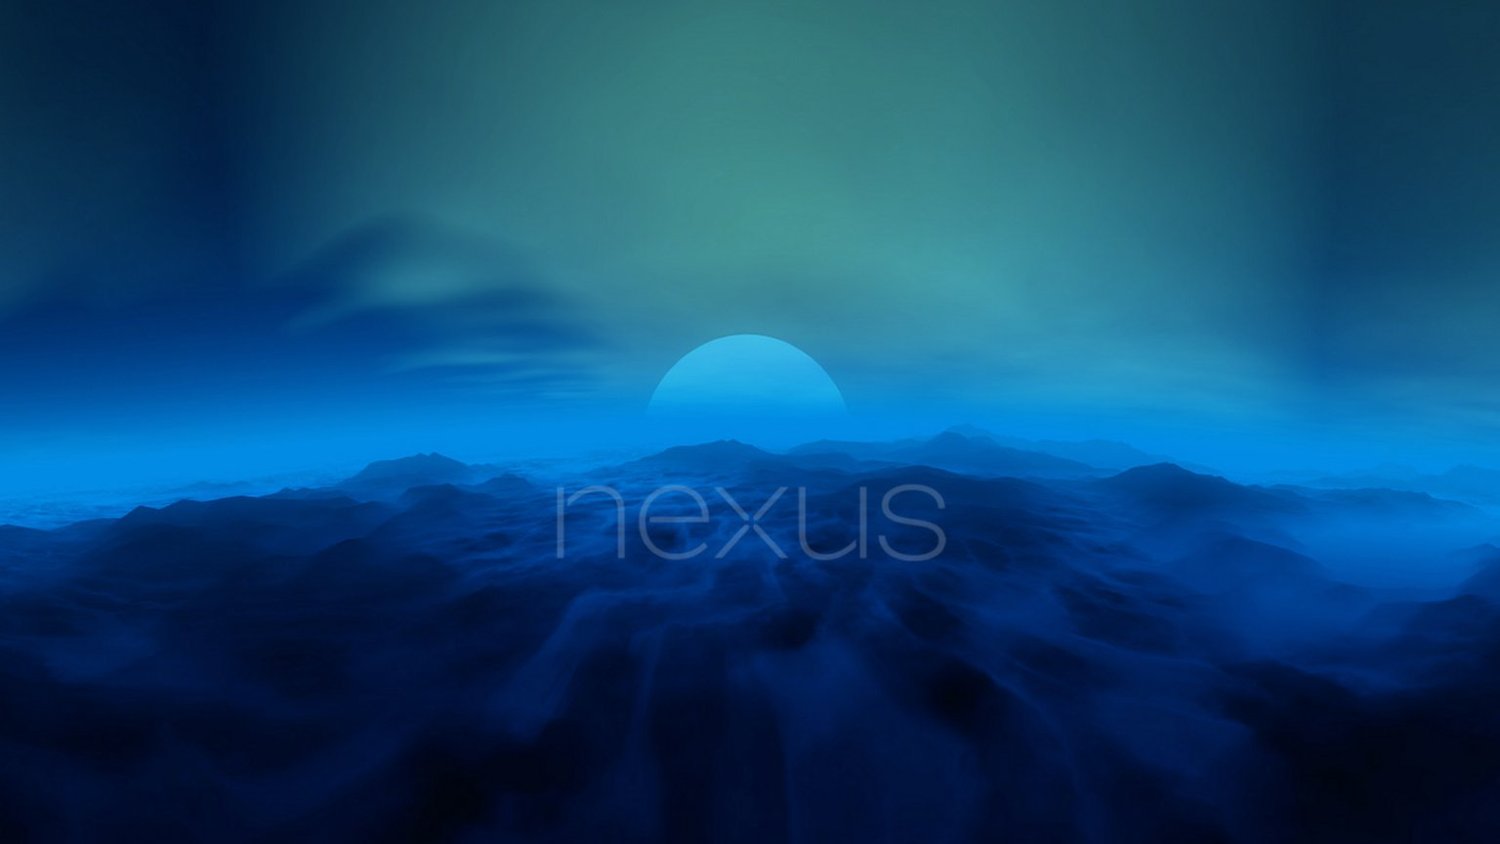 Новости Android, выпуск #81. Завершится ли эпоха Nexus в этом году? Возможен новый бренд смартфонов Google. Фото.